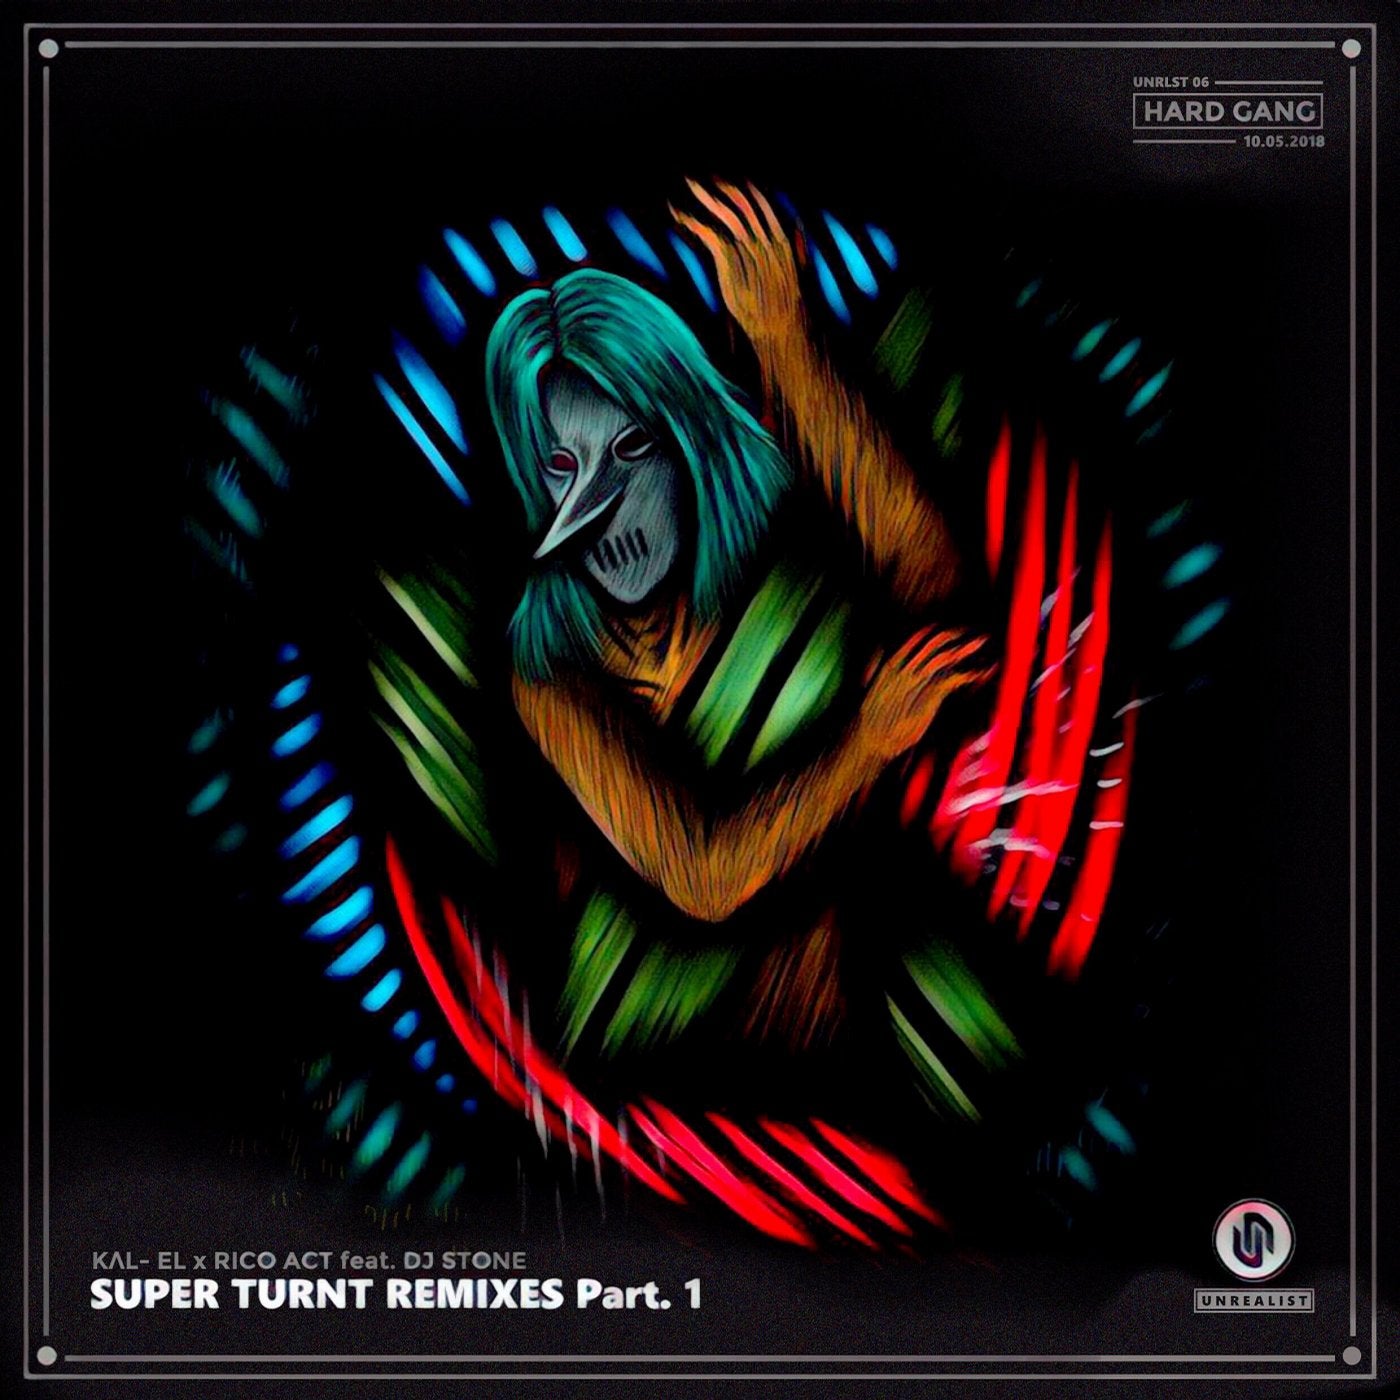 Super Turnt Remixes Pt. 1